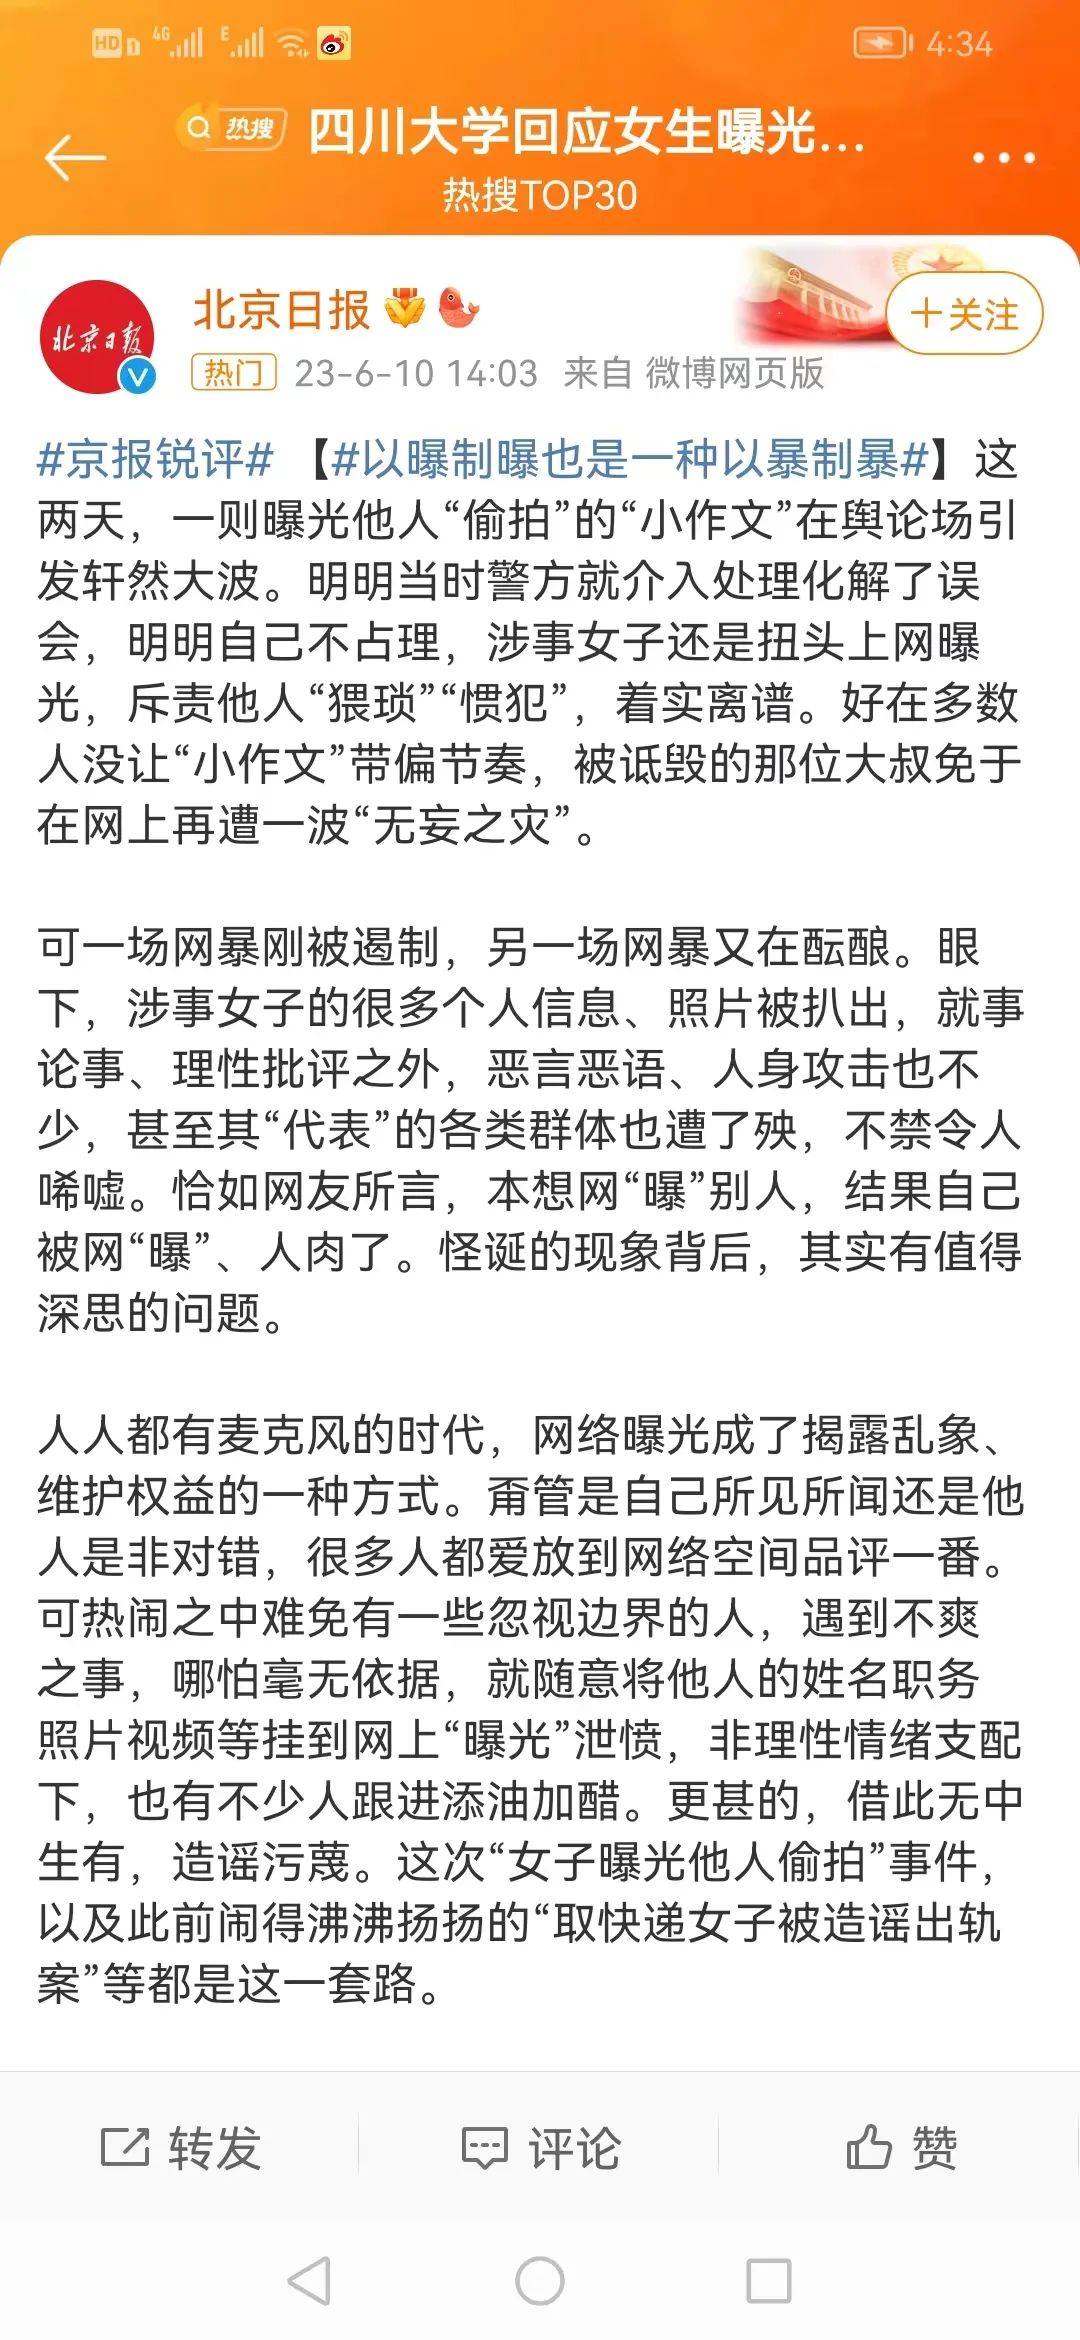 四川大学若想保护“注册不了张z”，请尽快出调查通报！